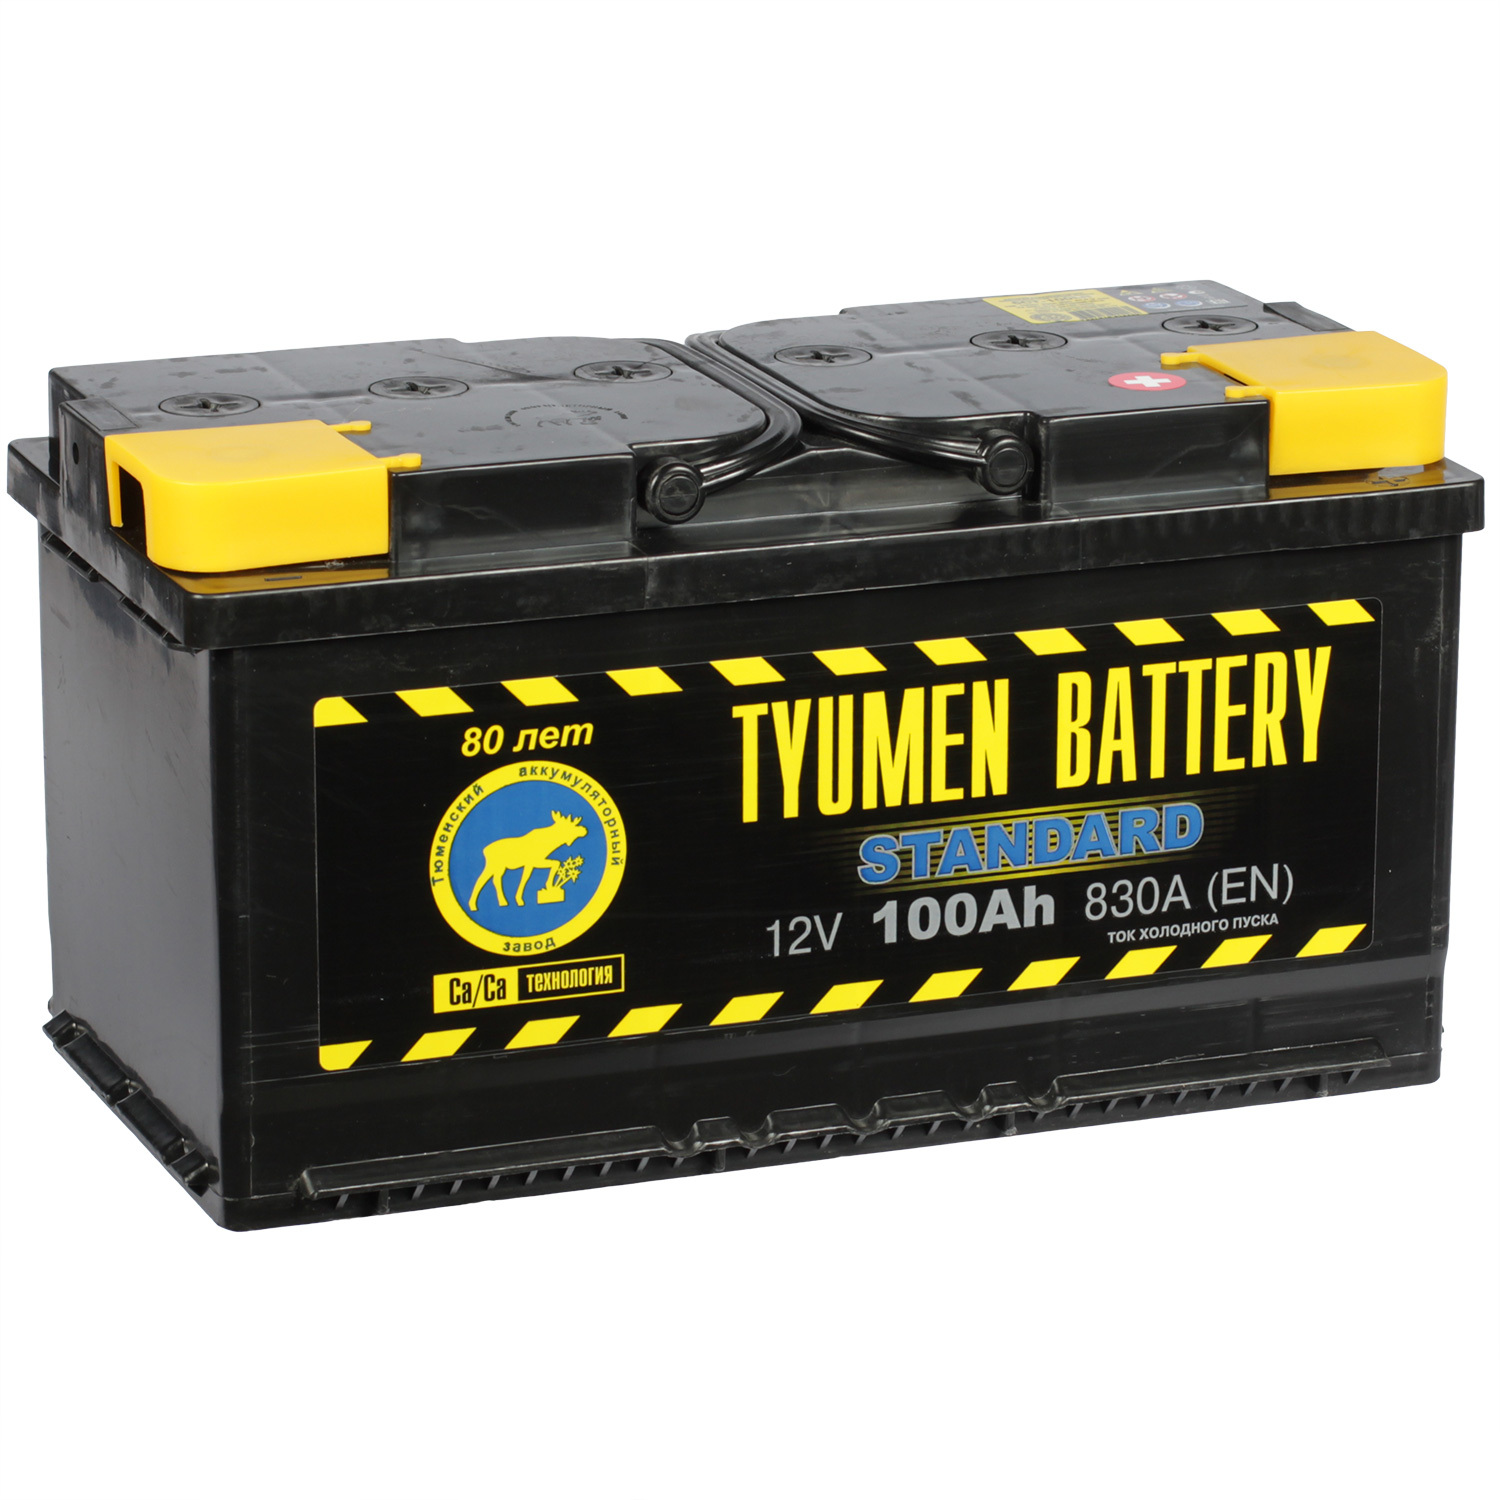 Tyumen Battery Автомобильный аккумулятор Tyumen Battery Standard 100 Ач обратная полярность L5 цена и фото